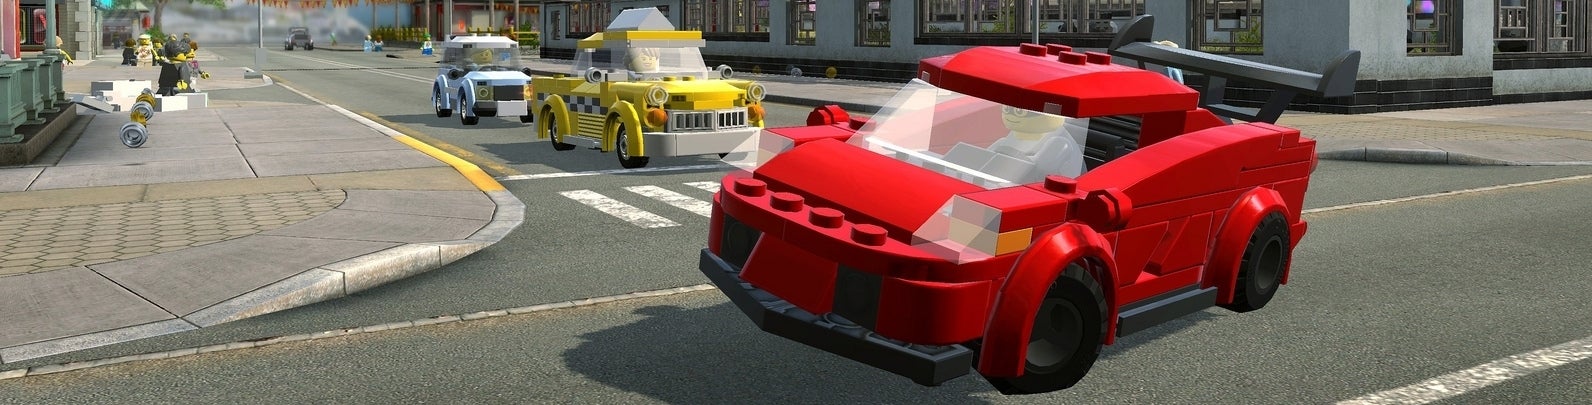 Imagem para LEGO City Undercover - Análise